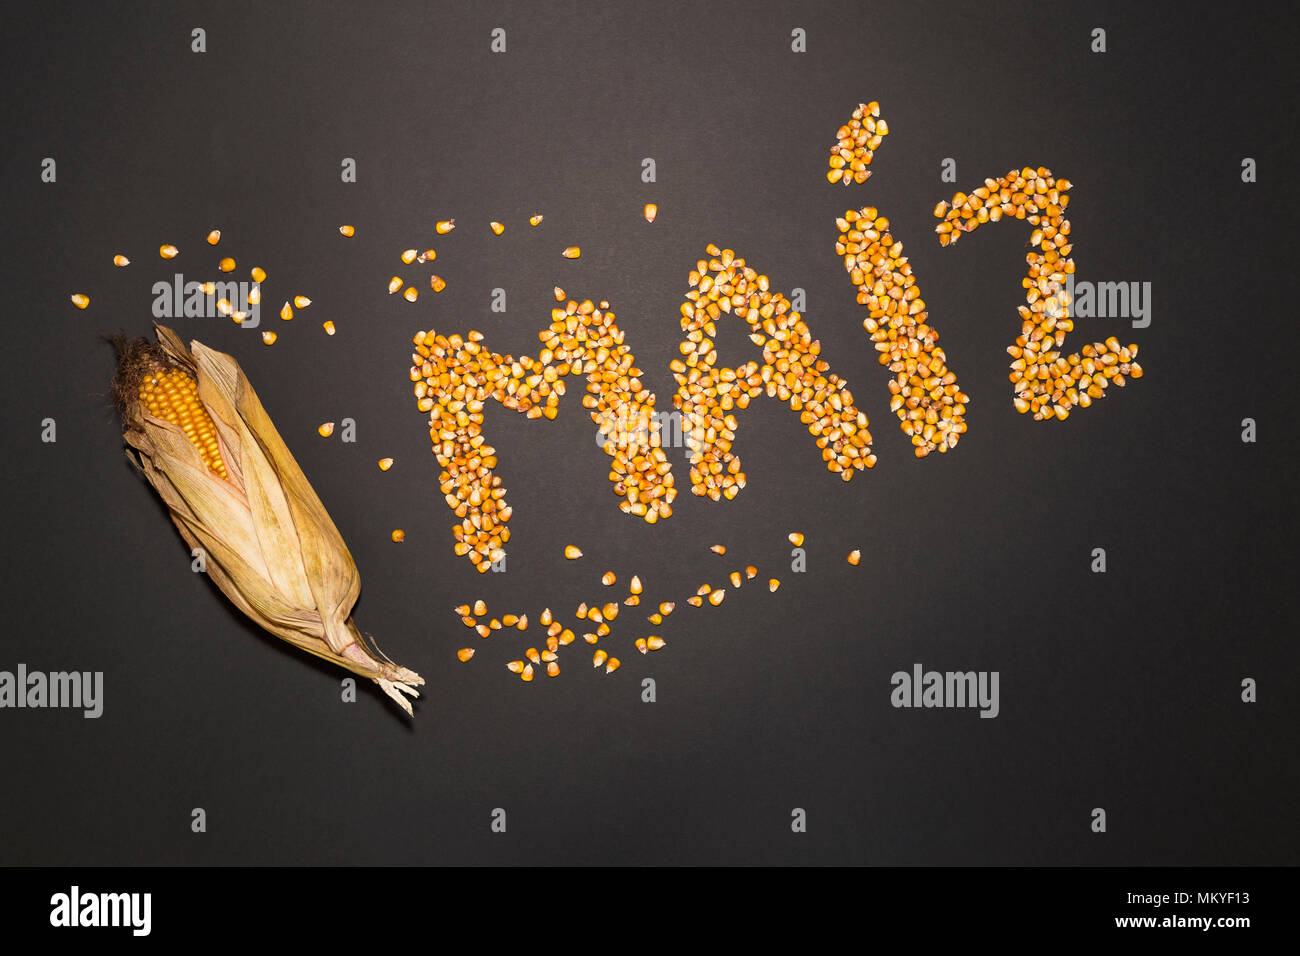 Concetto della parola mais in lingua spagnola formato a secco con semi di mais su sfondo nero e decorate con golden pannocchie di granoturco secco e semi di mais Foto Stock